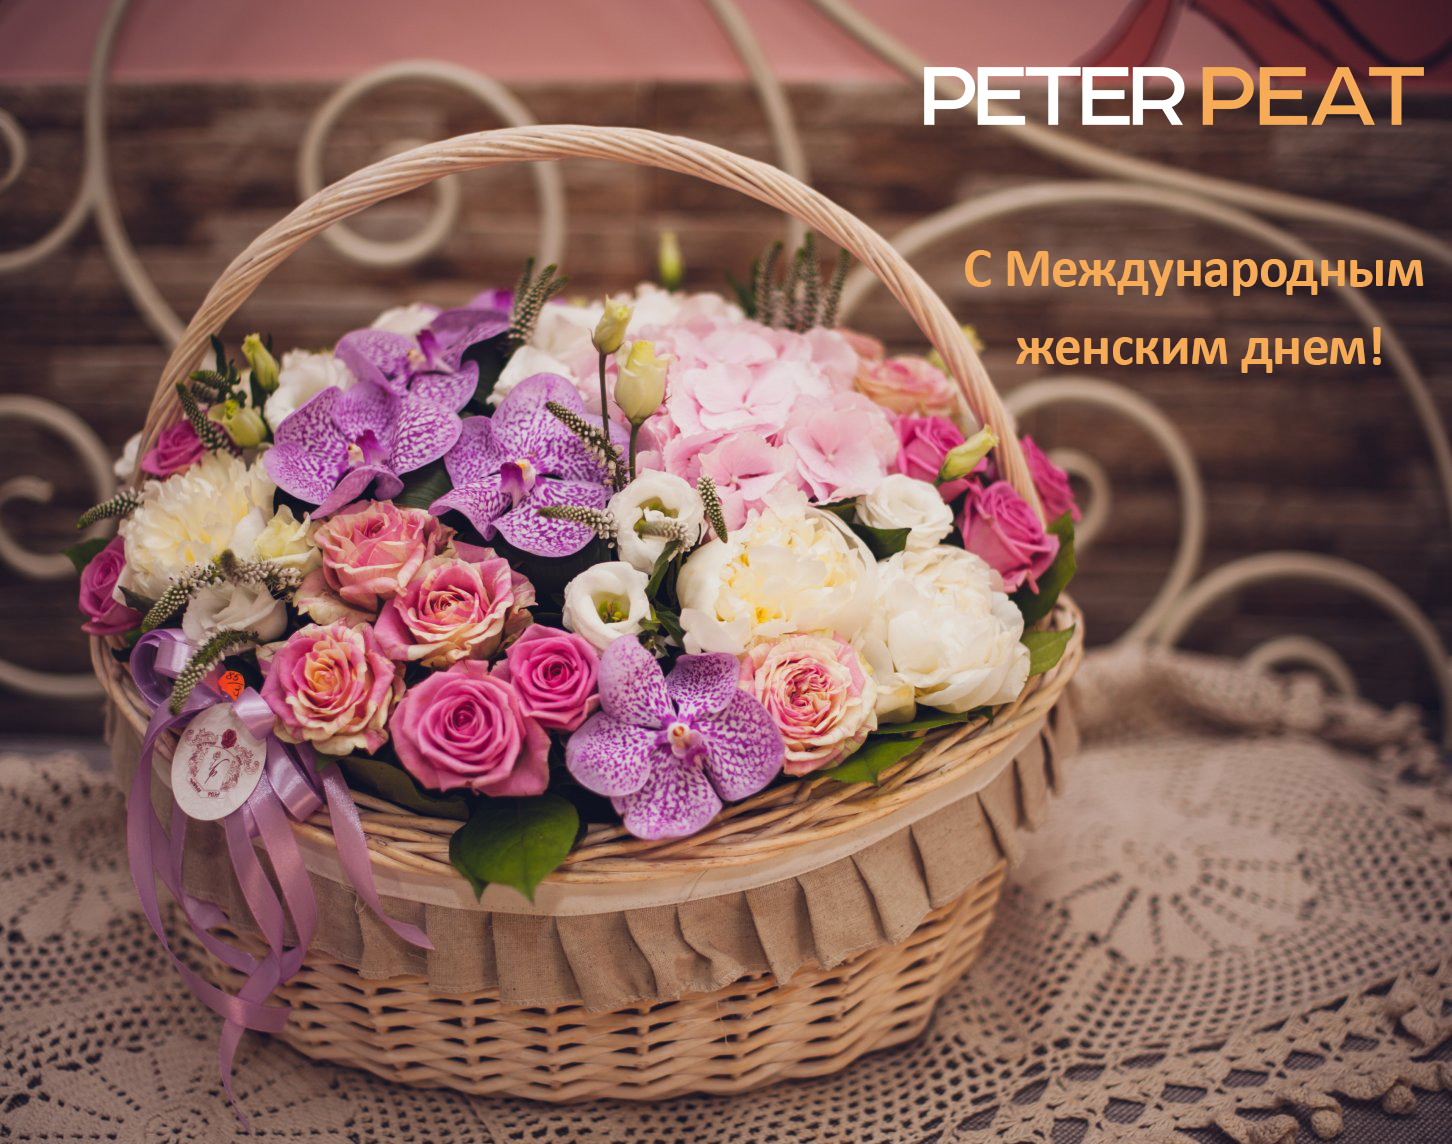 Поздравление с 8 марта от компании Питэр Пит